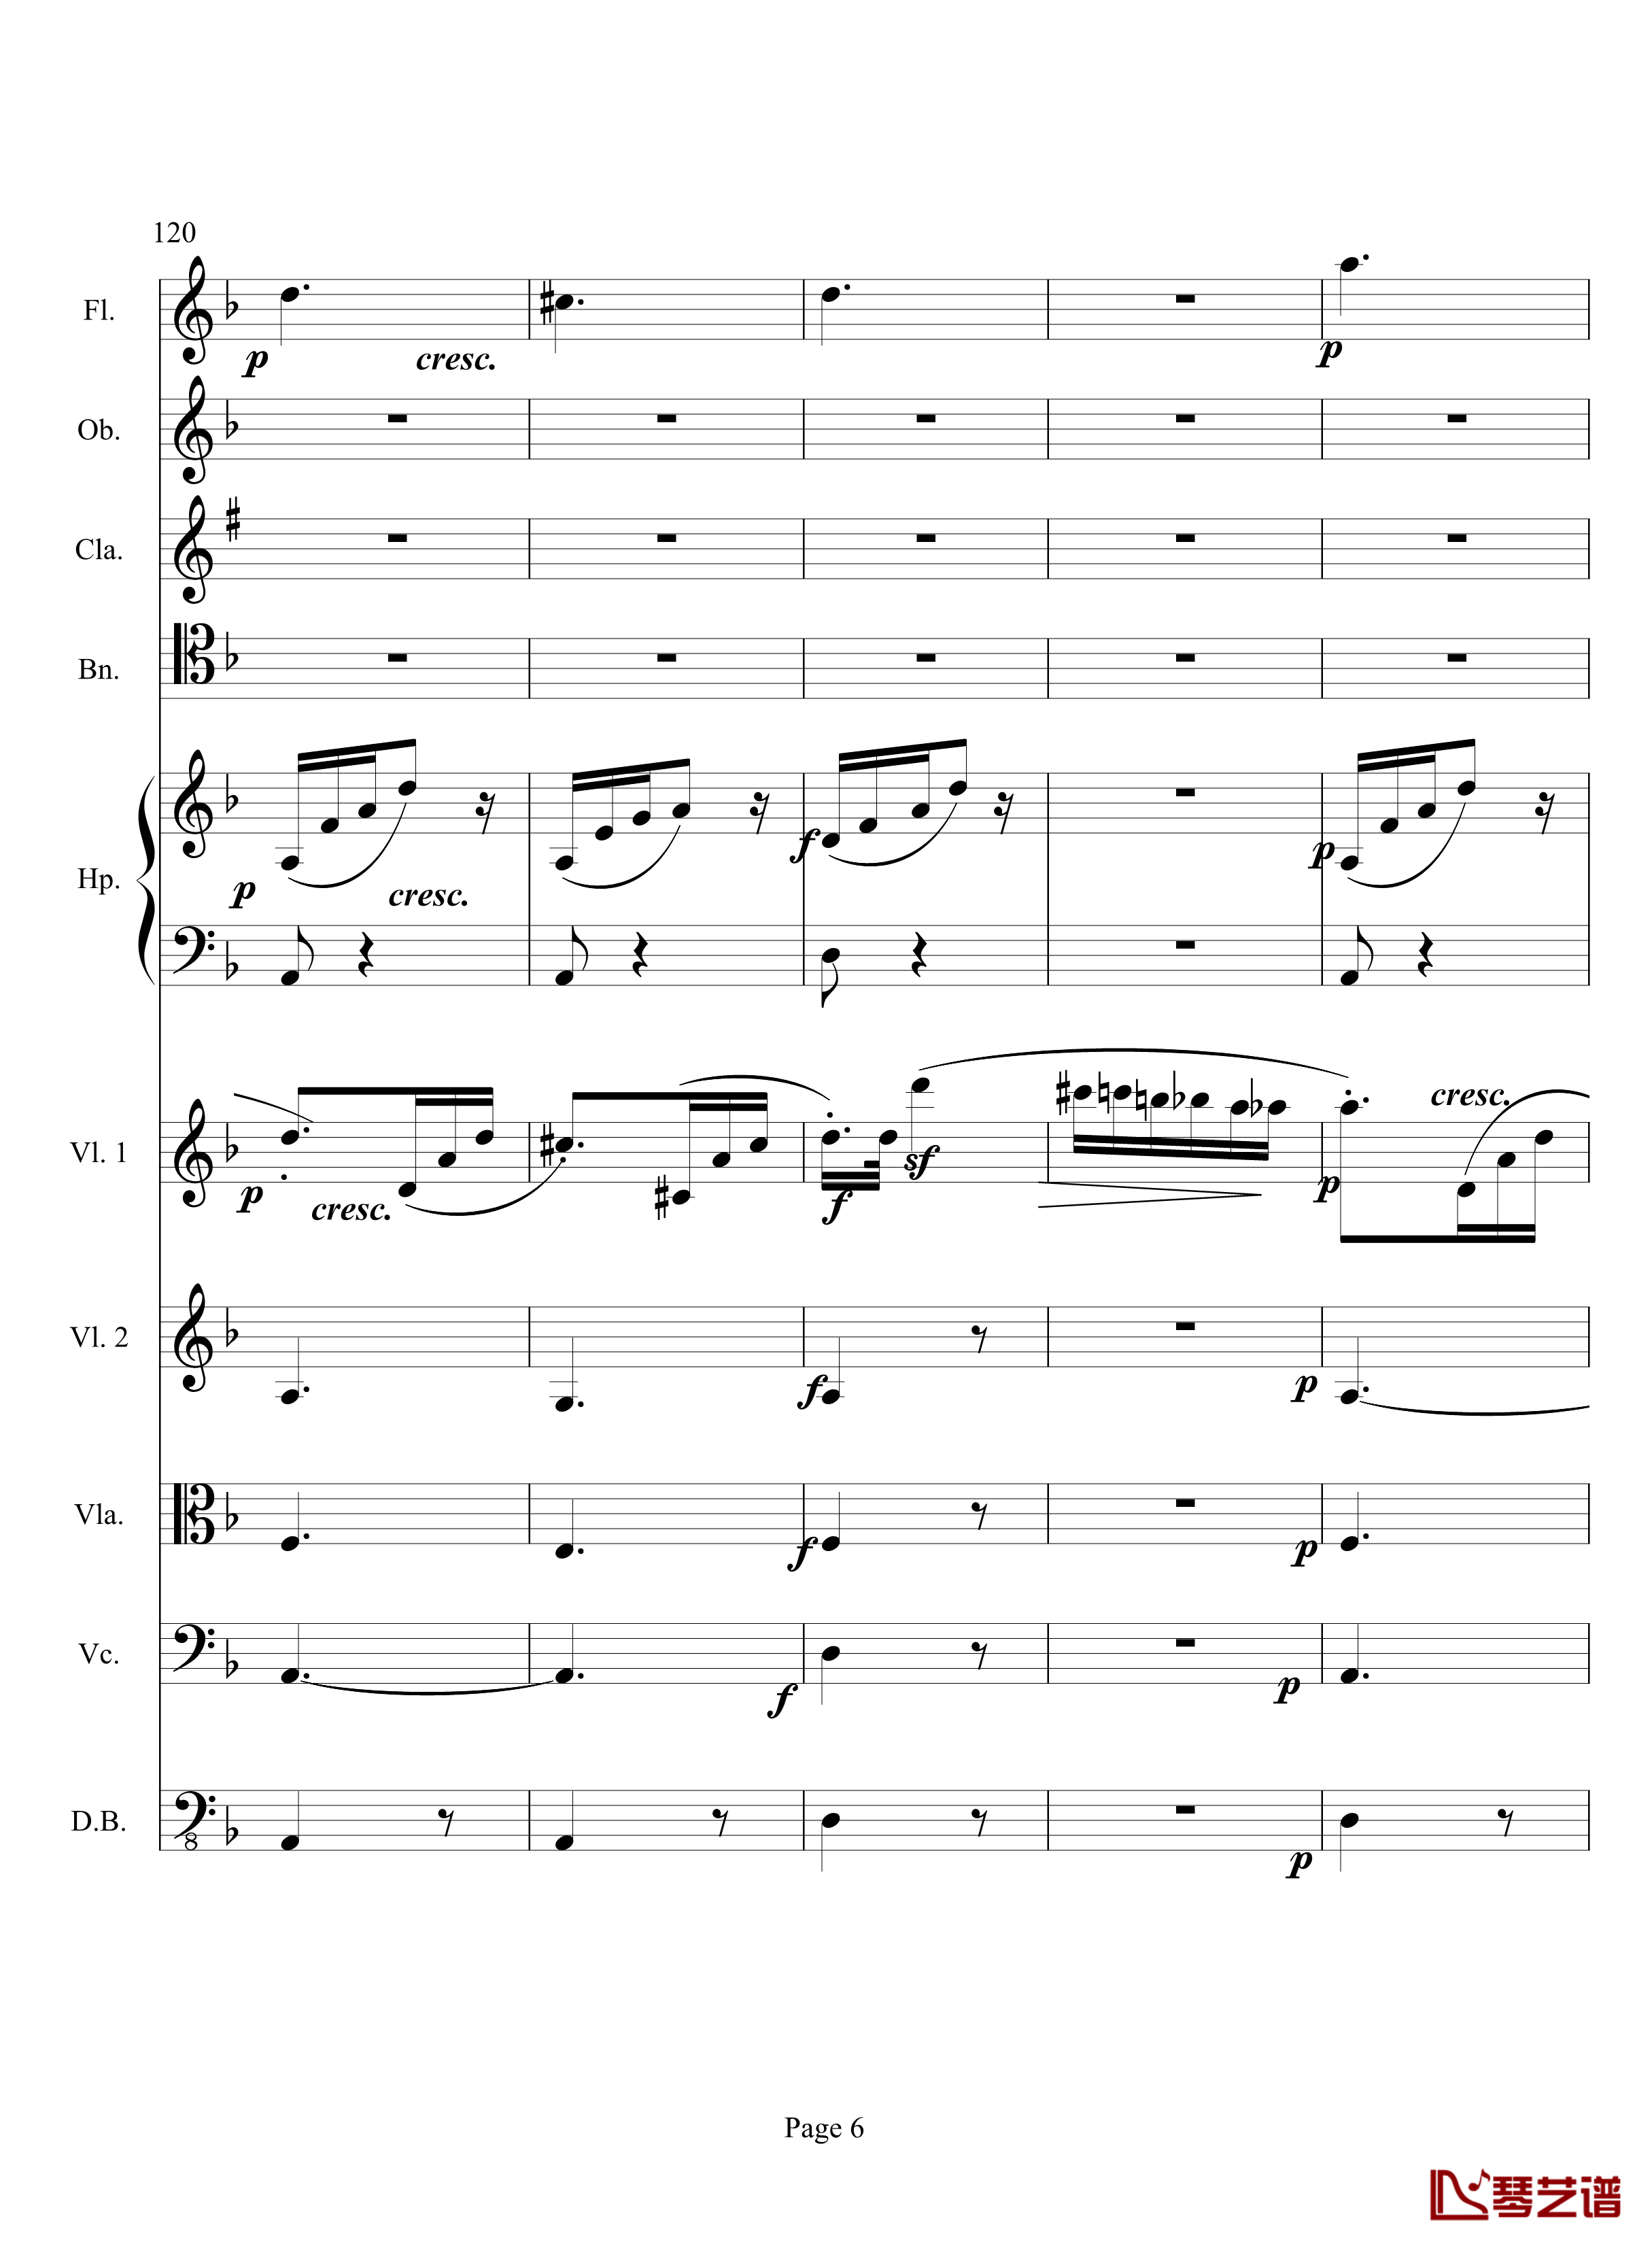 奏鸣曲之交响钢琴谱-第17首-Ⅲ-贝多芬-beethoven6